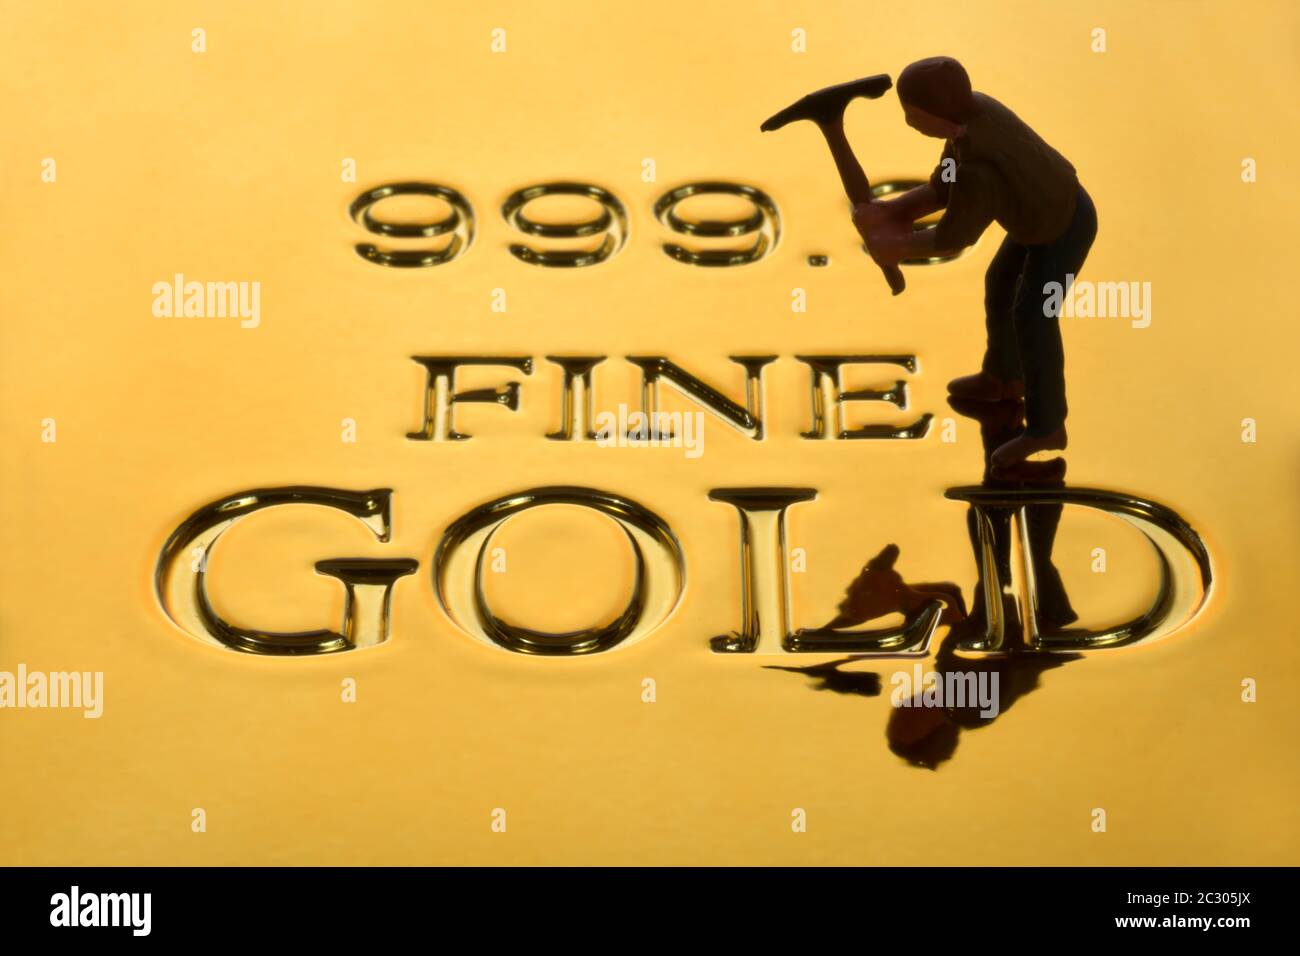 Cuadro simbólico, digger de oro en la barra de oro fina de oro 999, 9 grados de pureza, Alemania Foto de stock